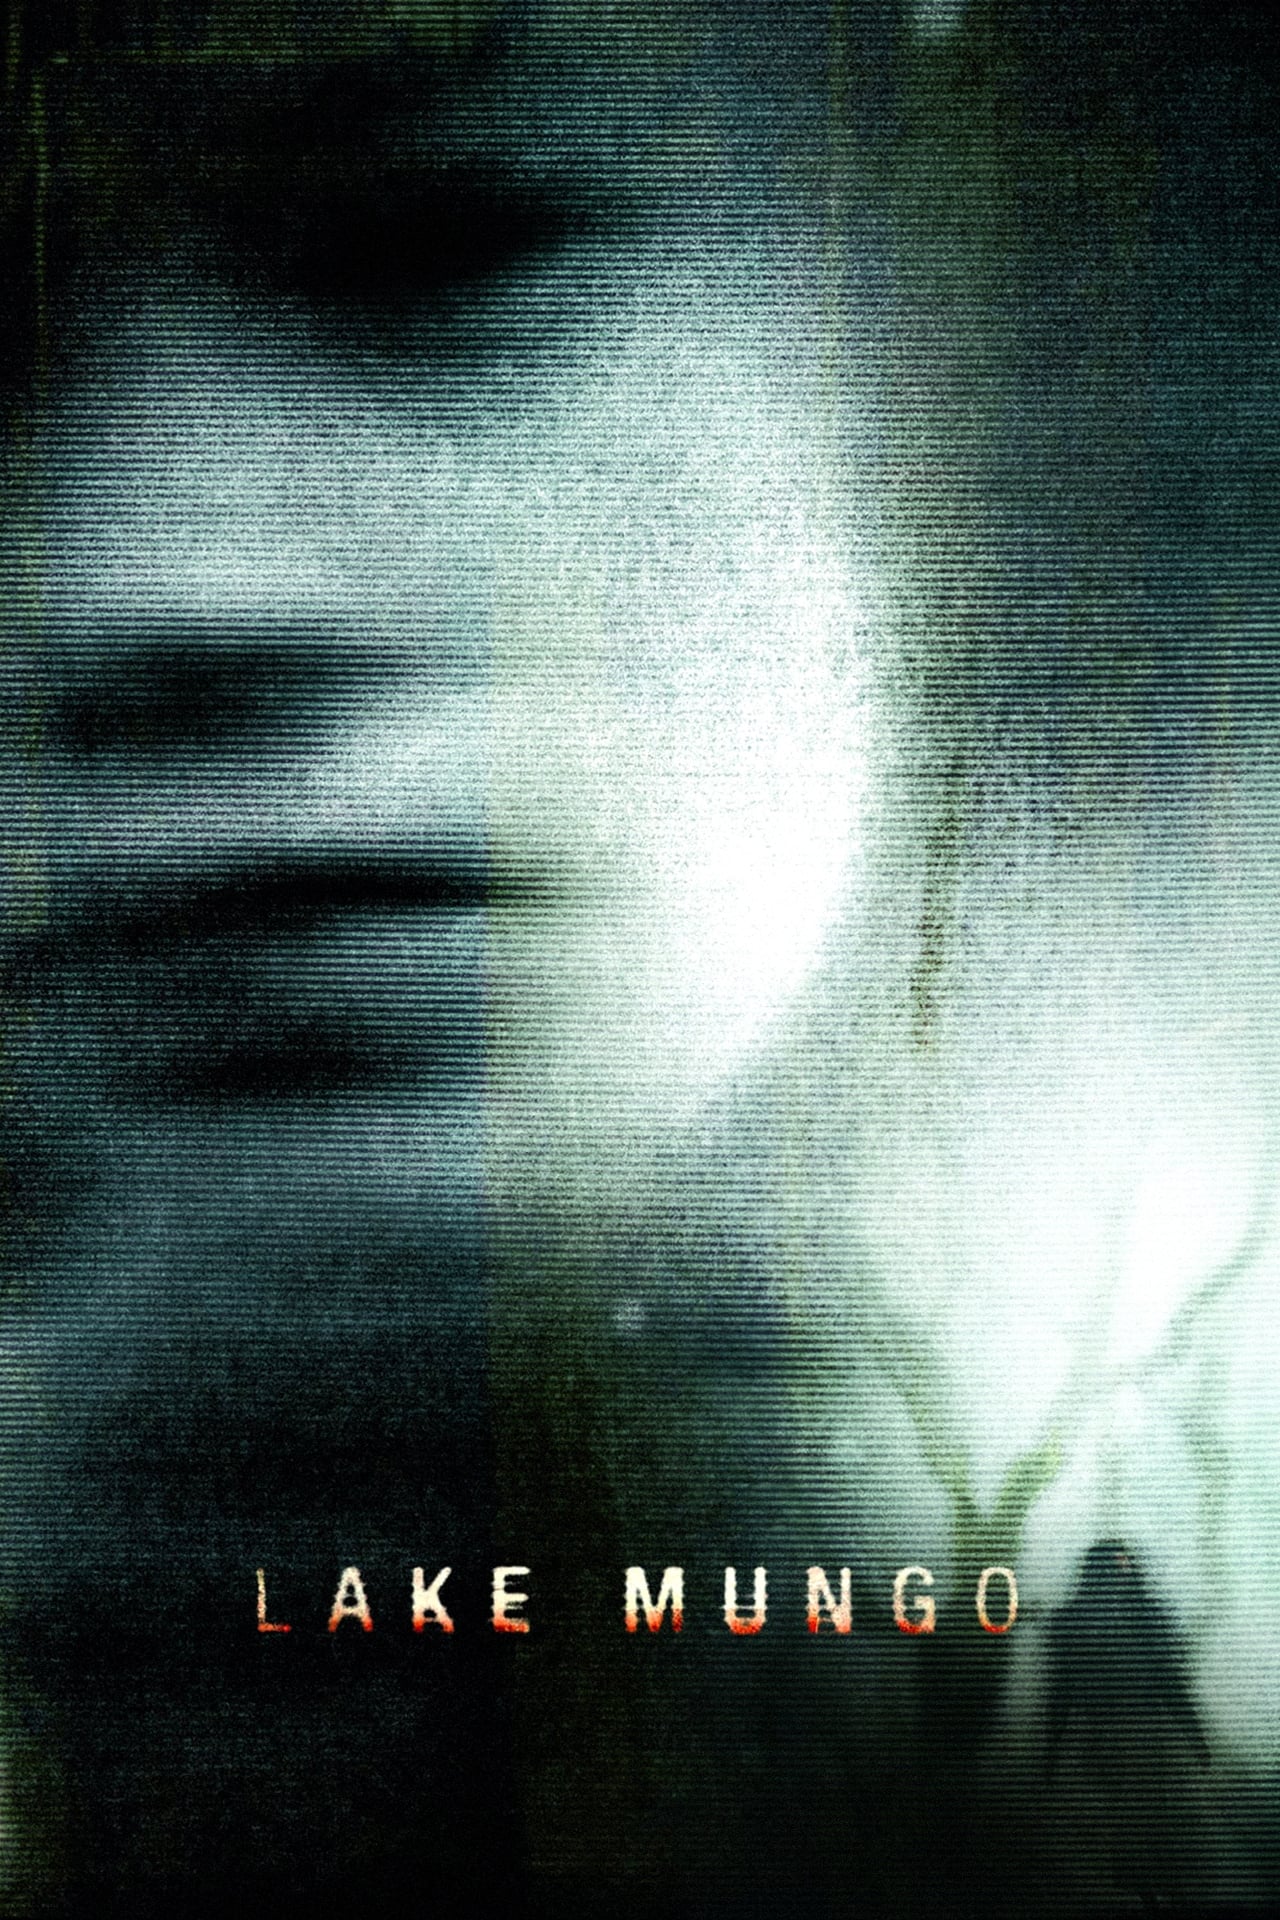 Lake Mungo poster